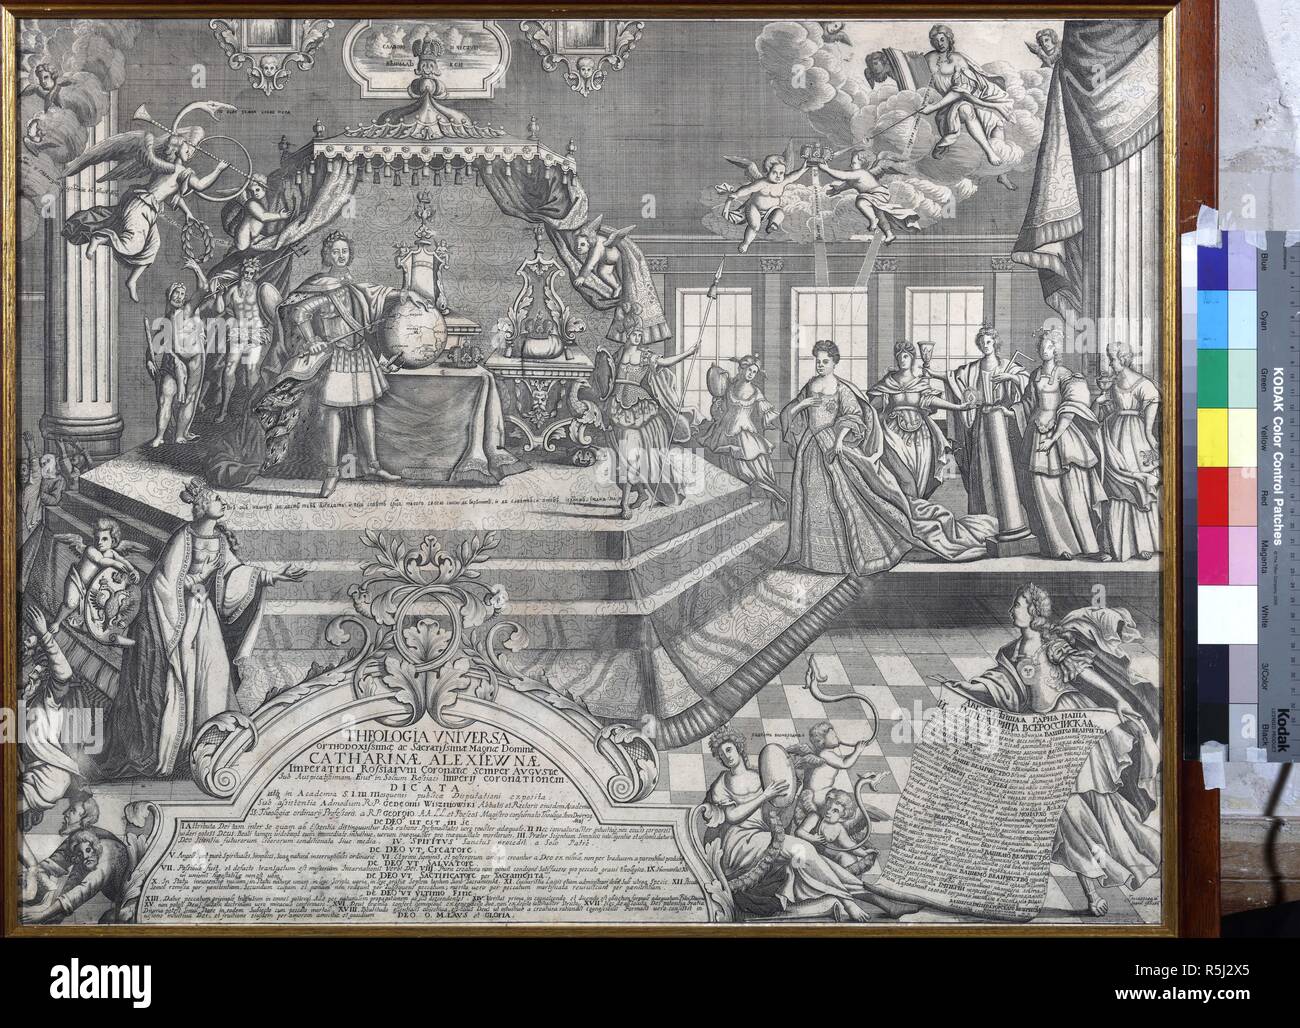 Abschluss der Krönung von Kaiserin Katharina ich am 6. Mai 1724. Museum: Landesmuseum von A. S. Puschkin, Moskau. Autor: Zubov, Ivan Fyodorovich. Stockfoto